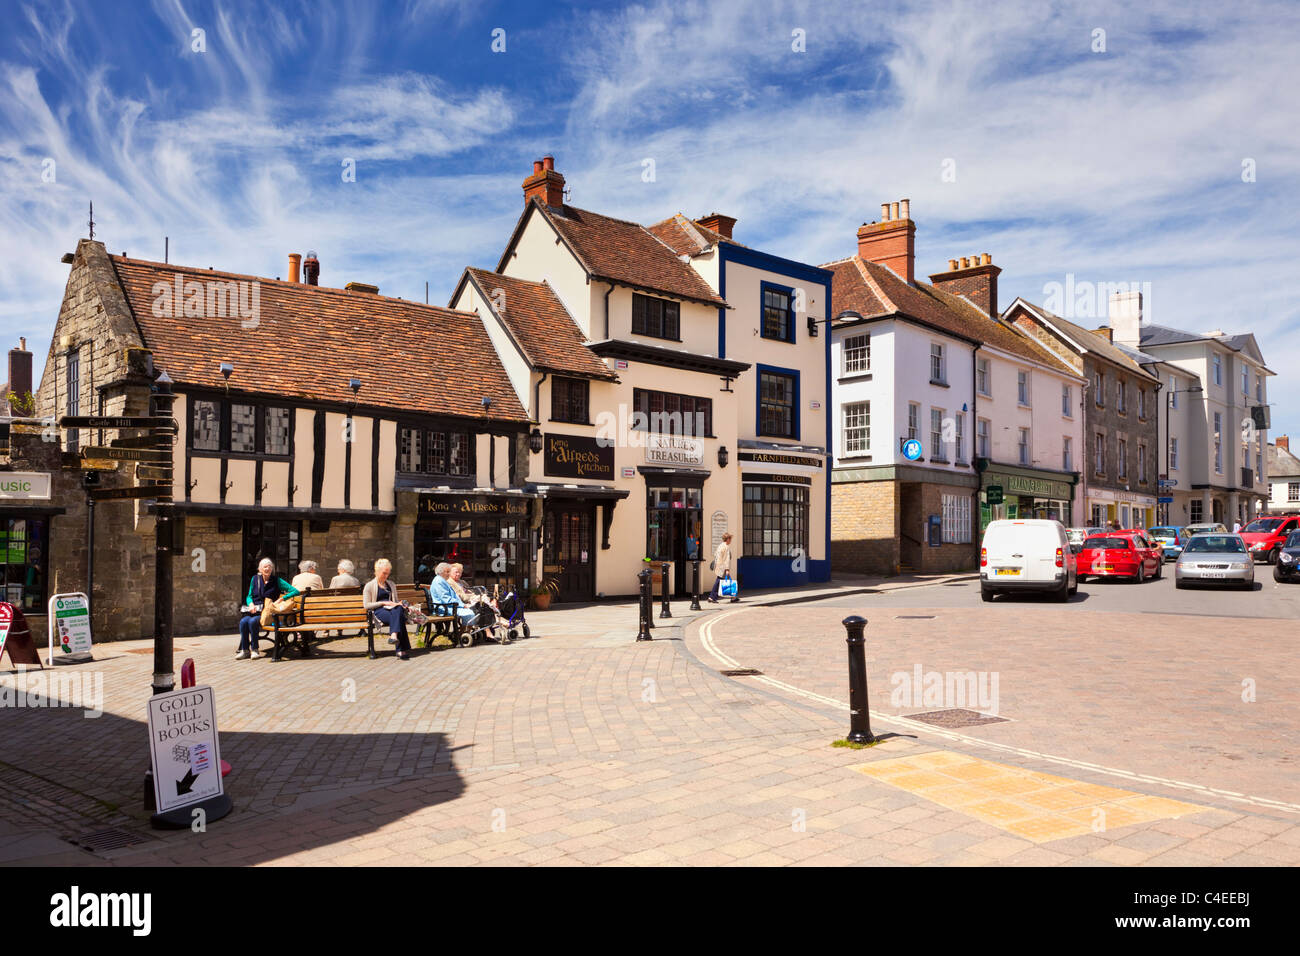 Ancienne scène de rue à Shaftesbury, dans le Dorset, Angleterre, Royaume-Uni Banque D'Images